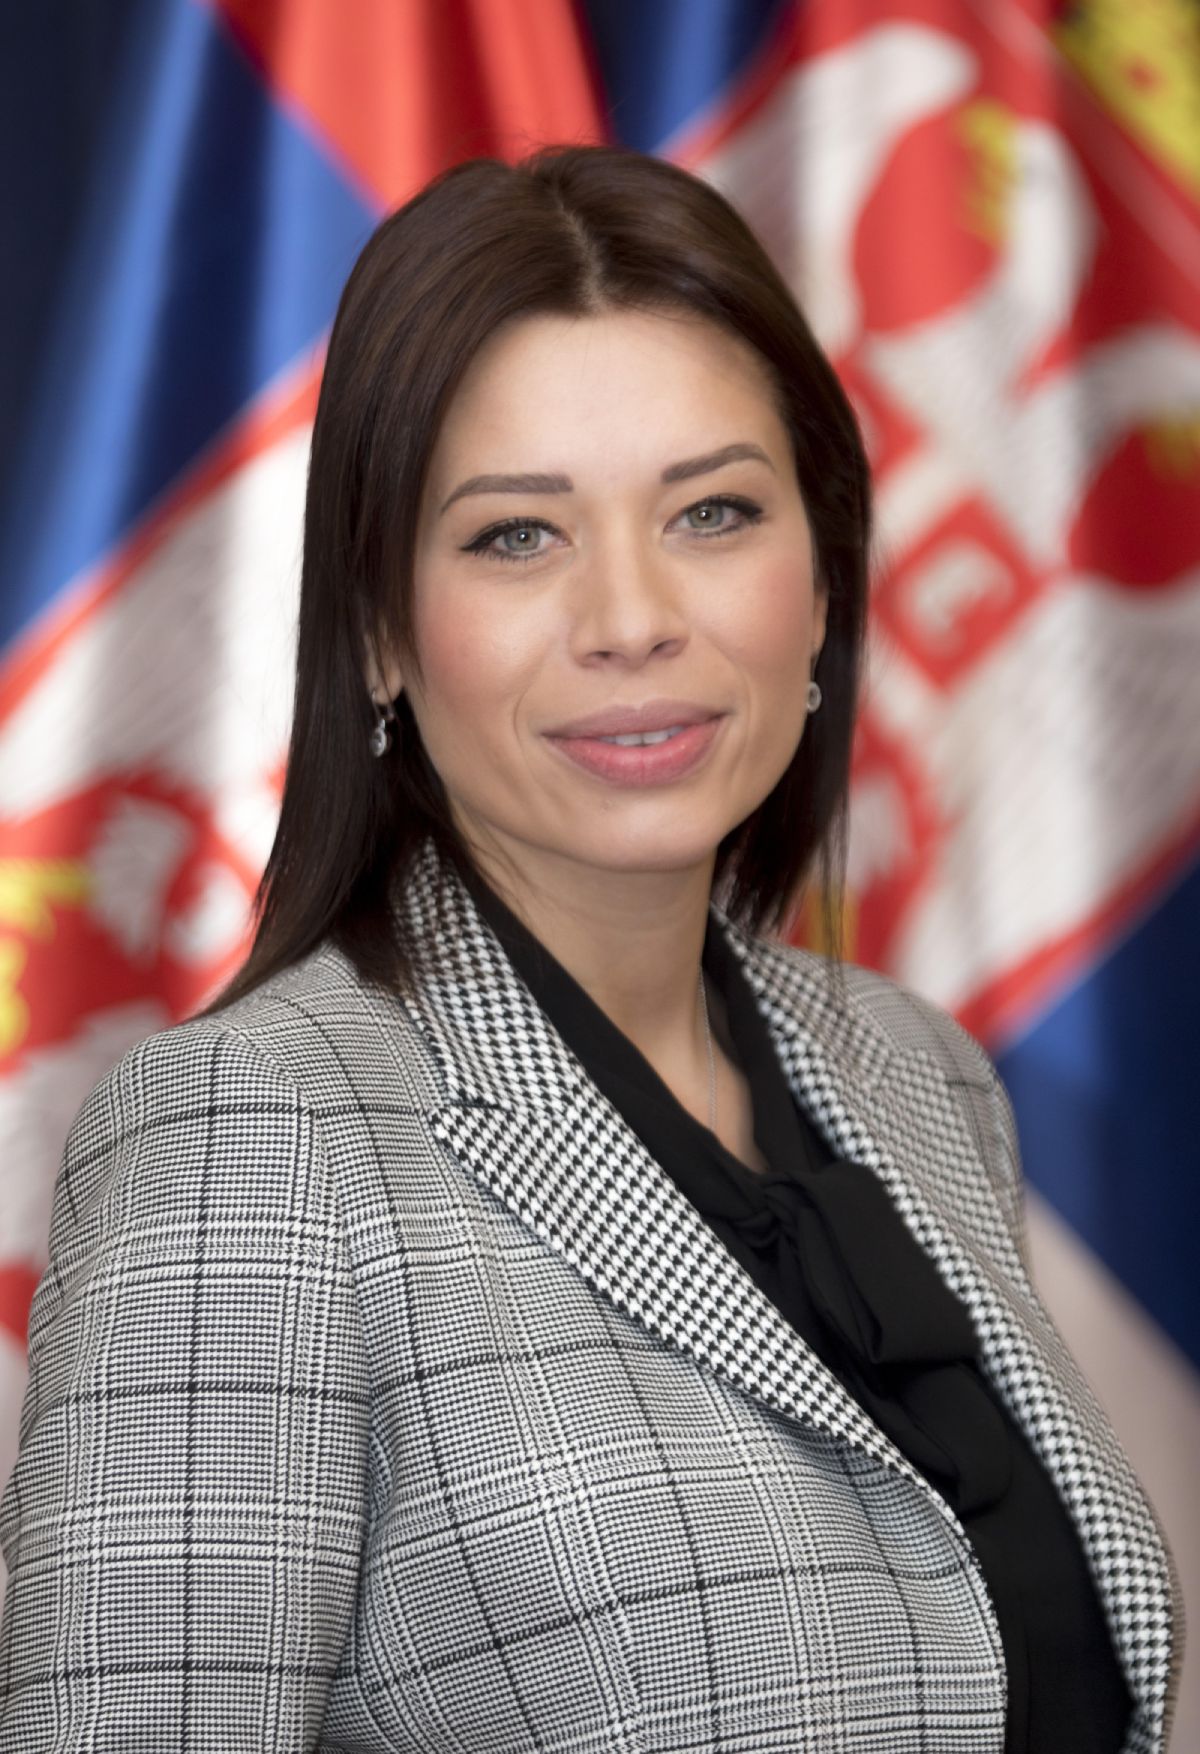 Irena Vujovic